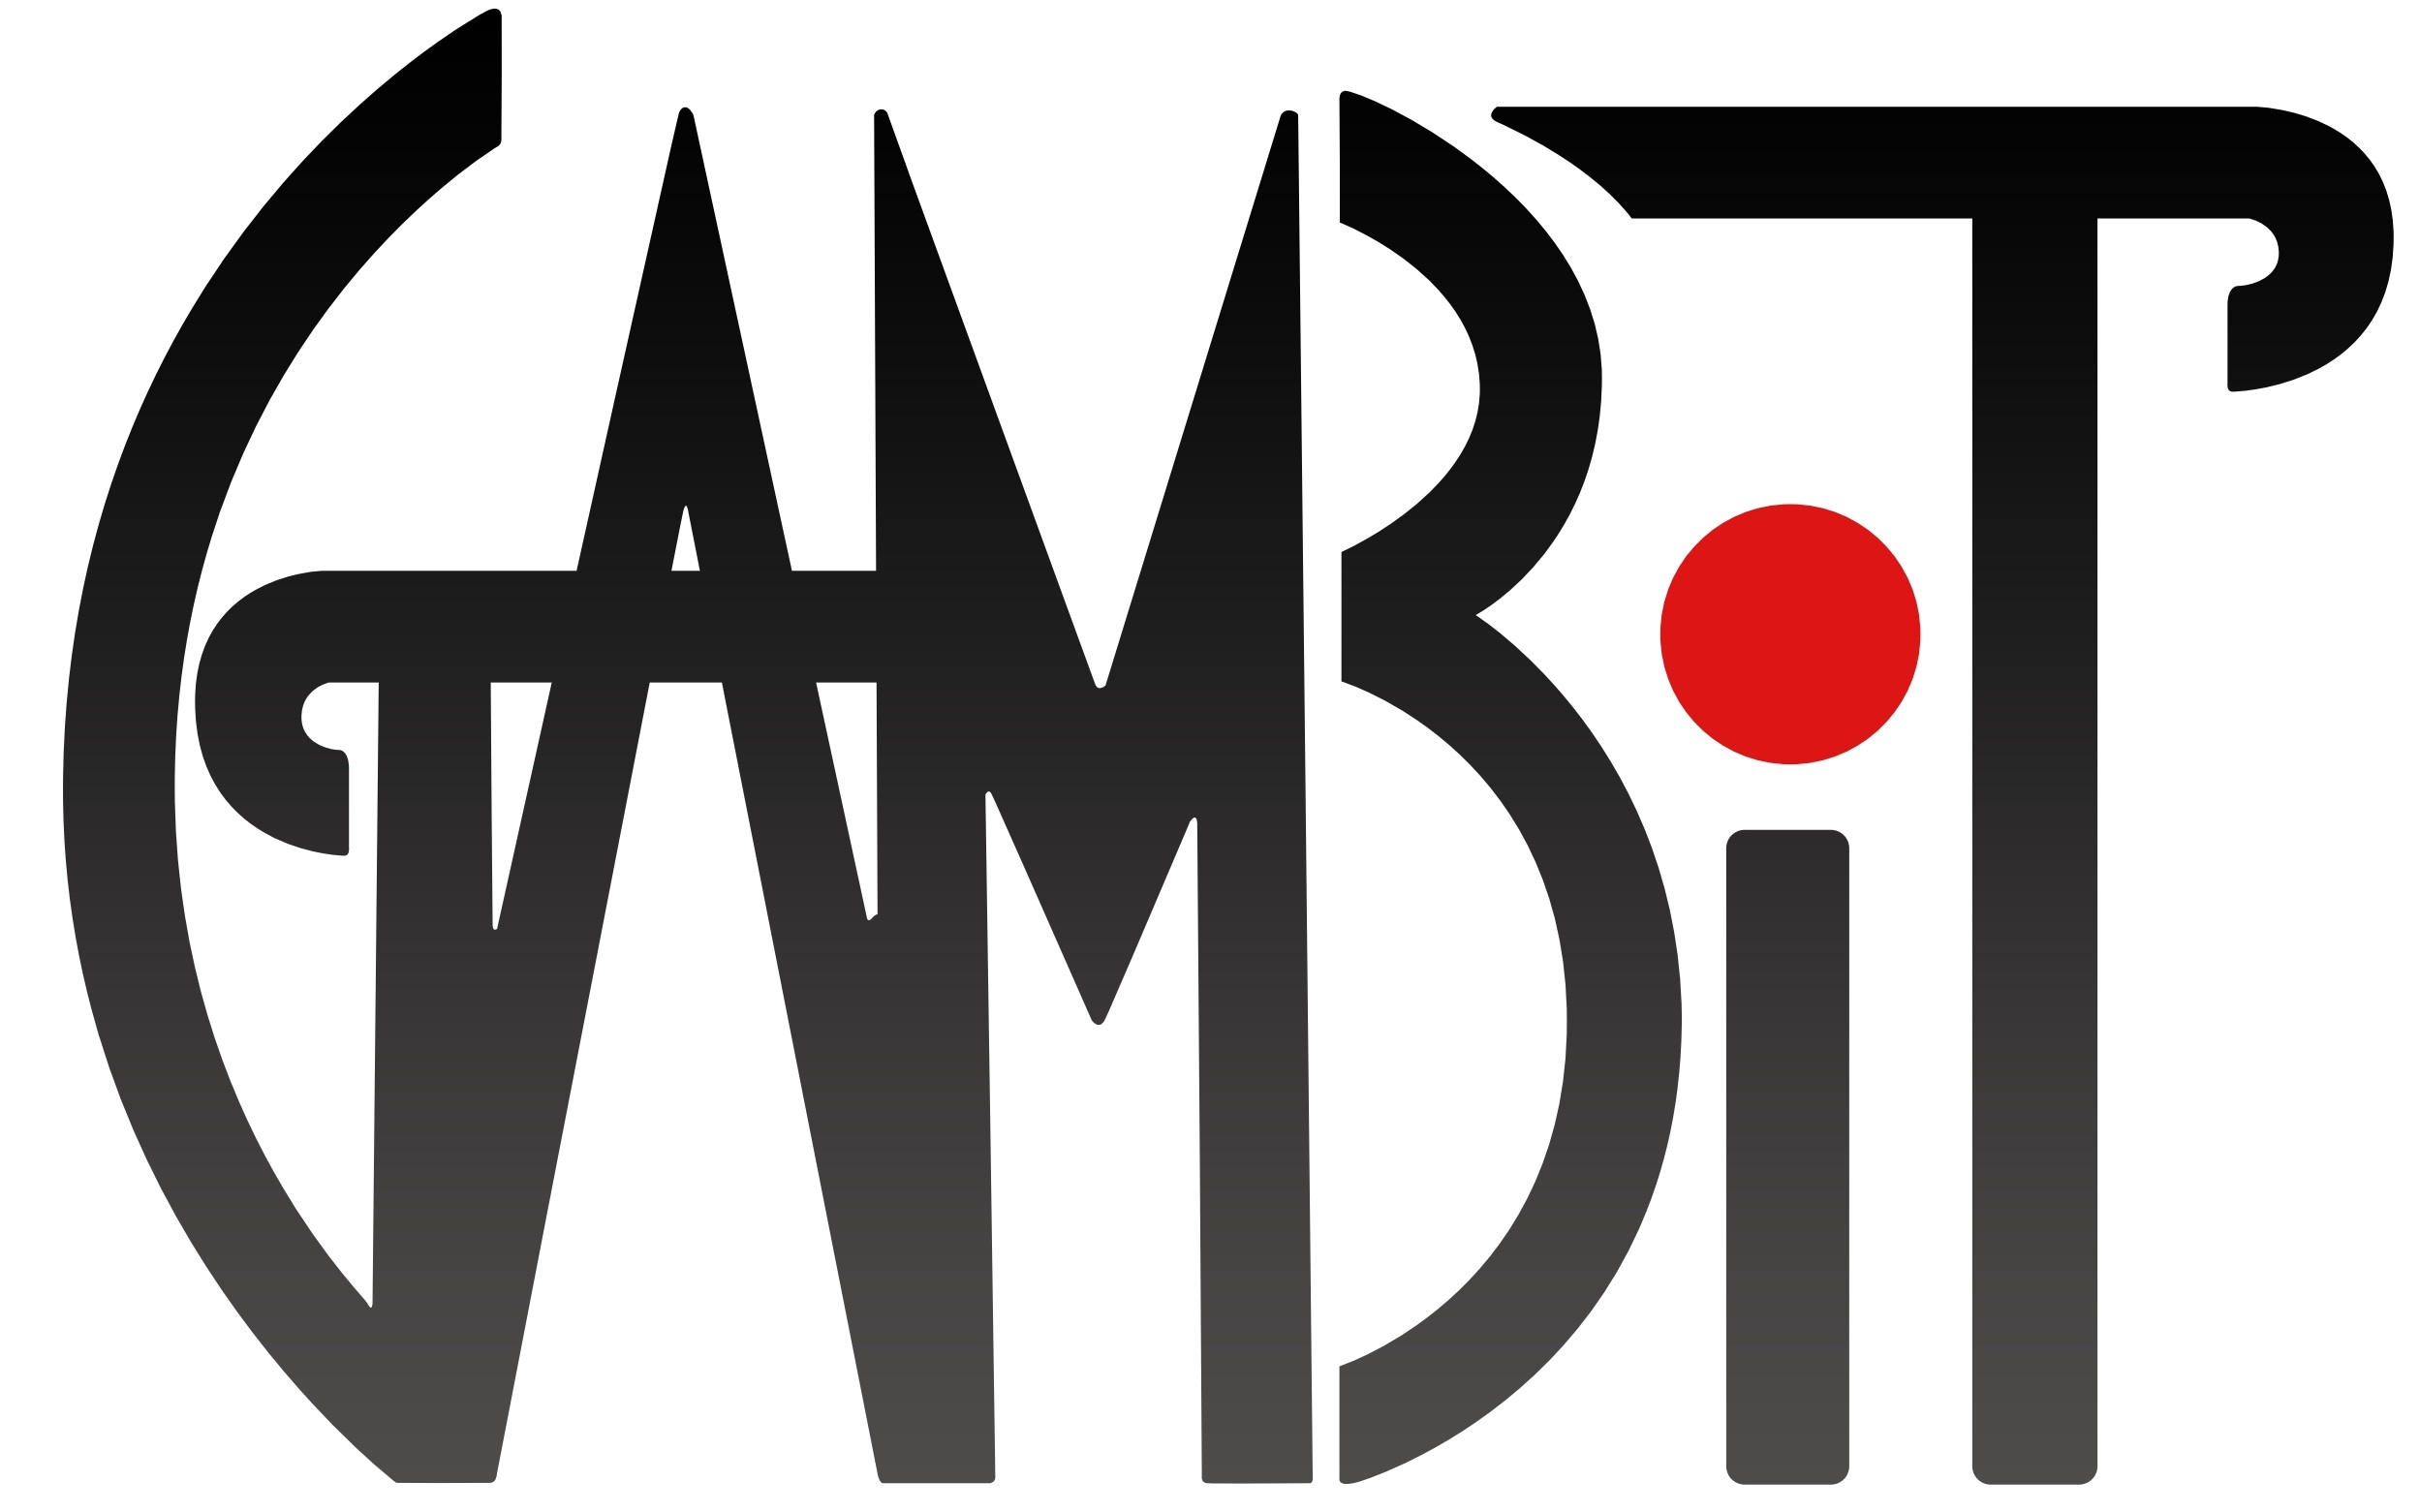 GAMBIT Logo.jpg e62512e2552102b4c4c77a6ac3e155d6